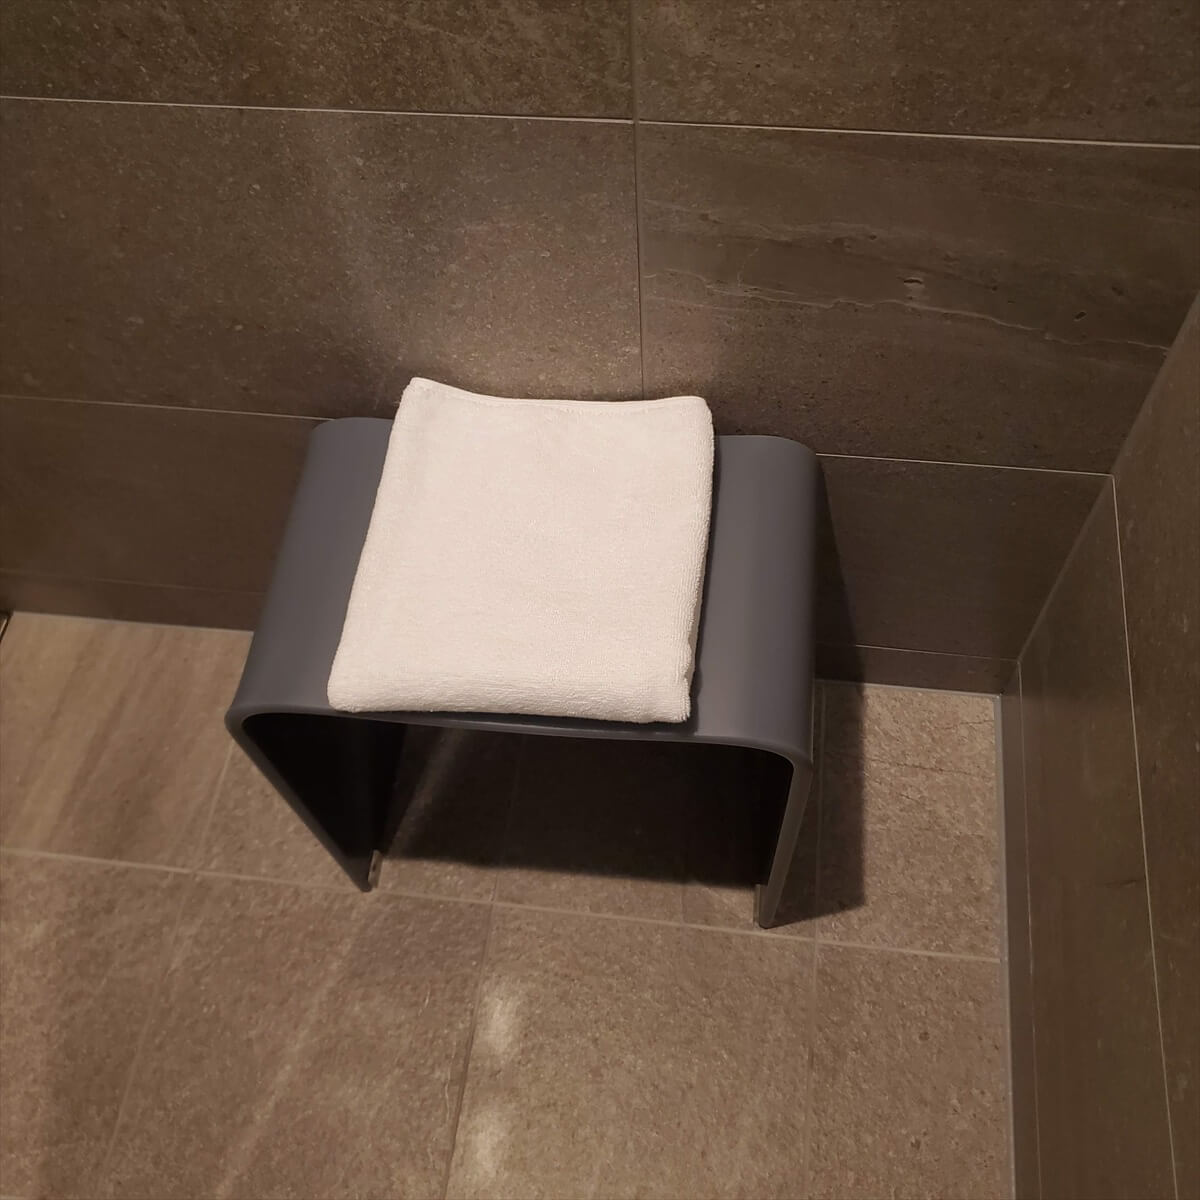 ACホテル銀座のプライムスーペリアキングのシャワールームの椅子